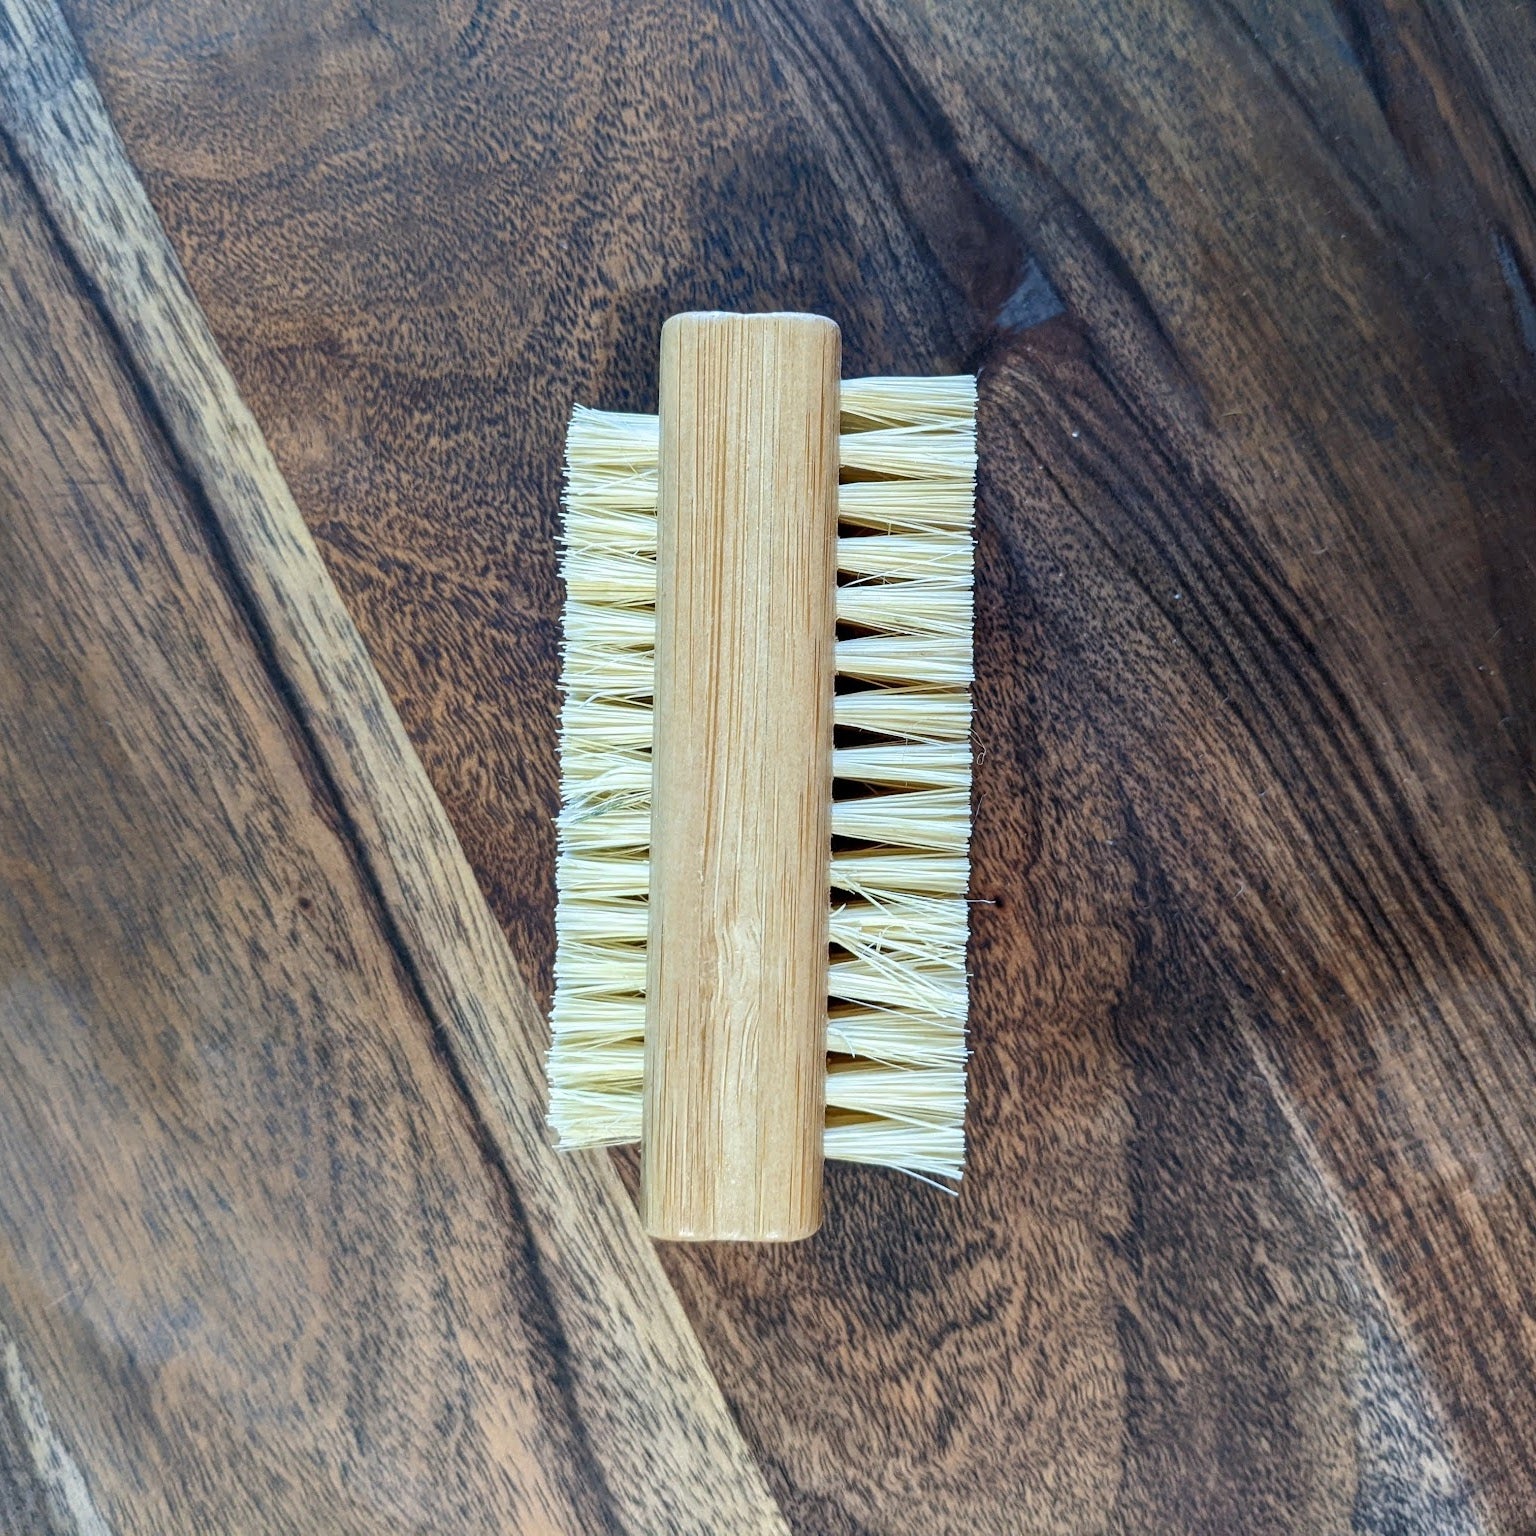 Image of Nail Brush made of Bamboo